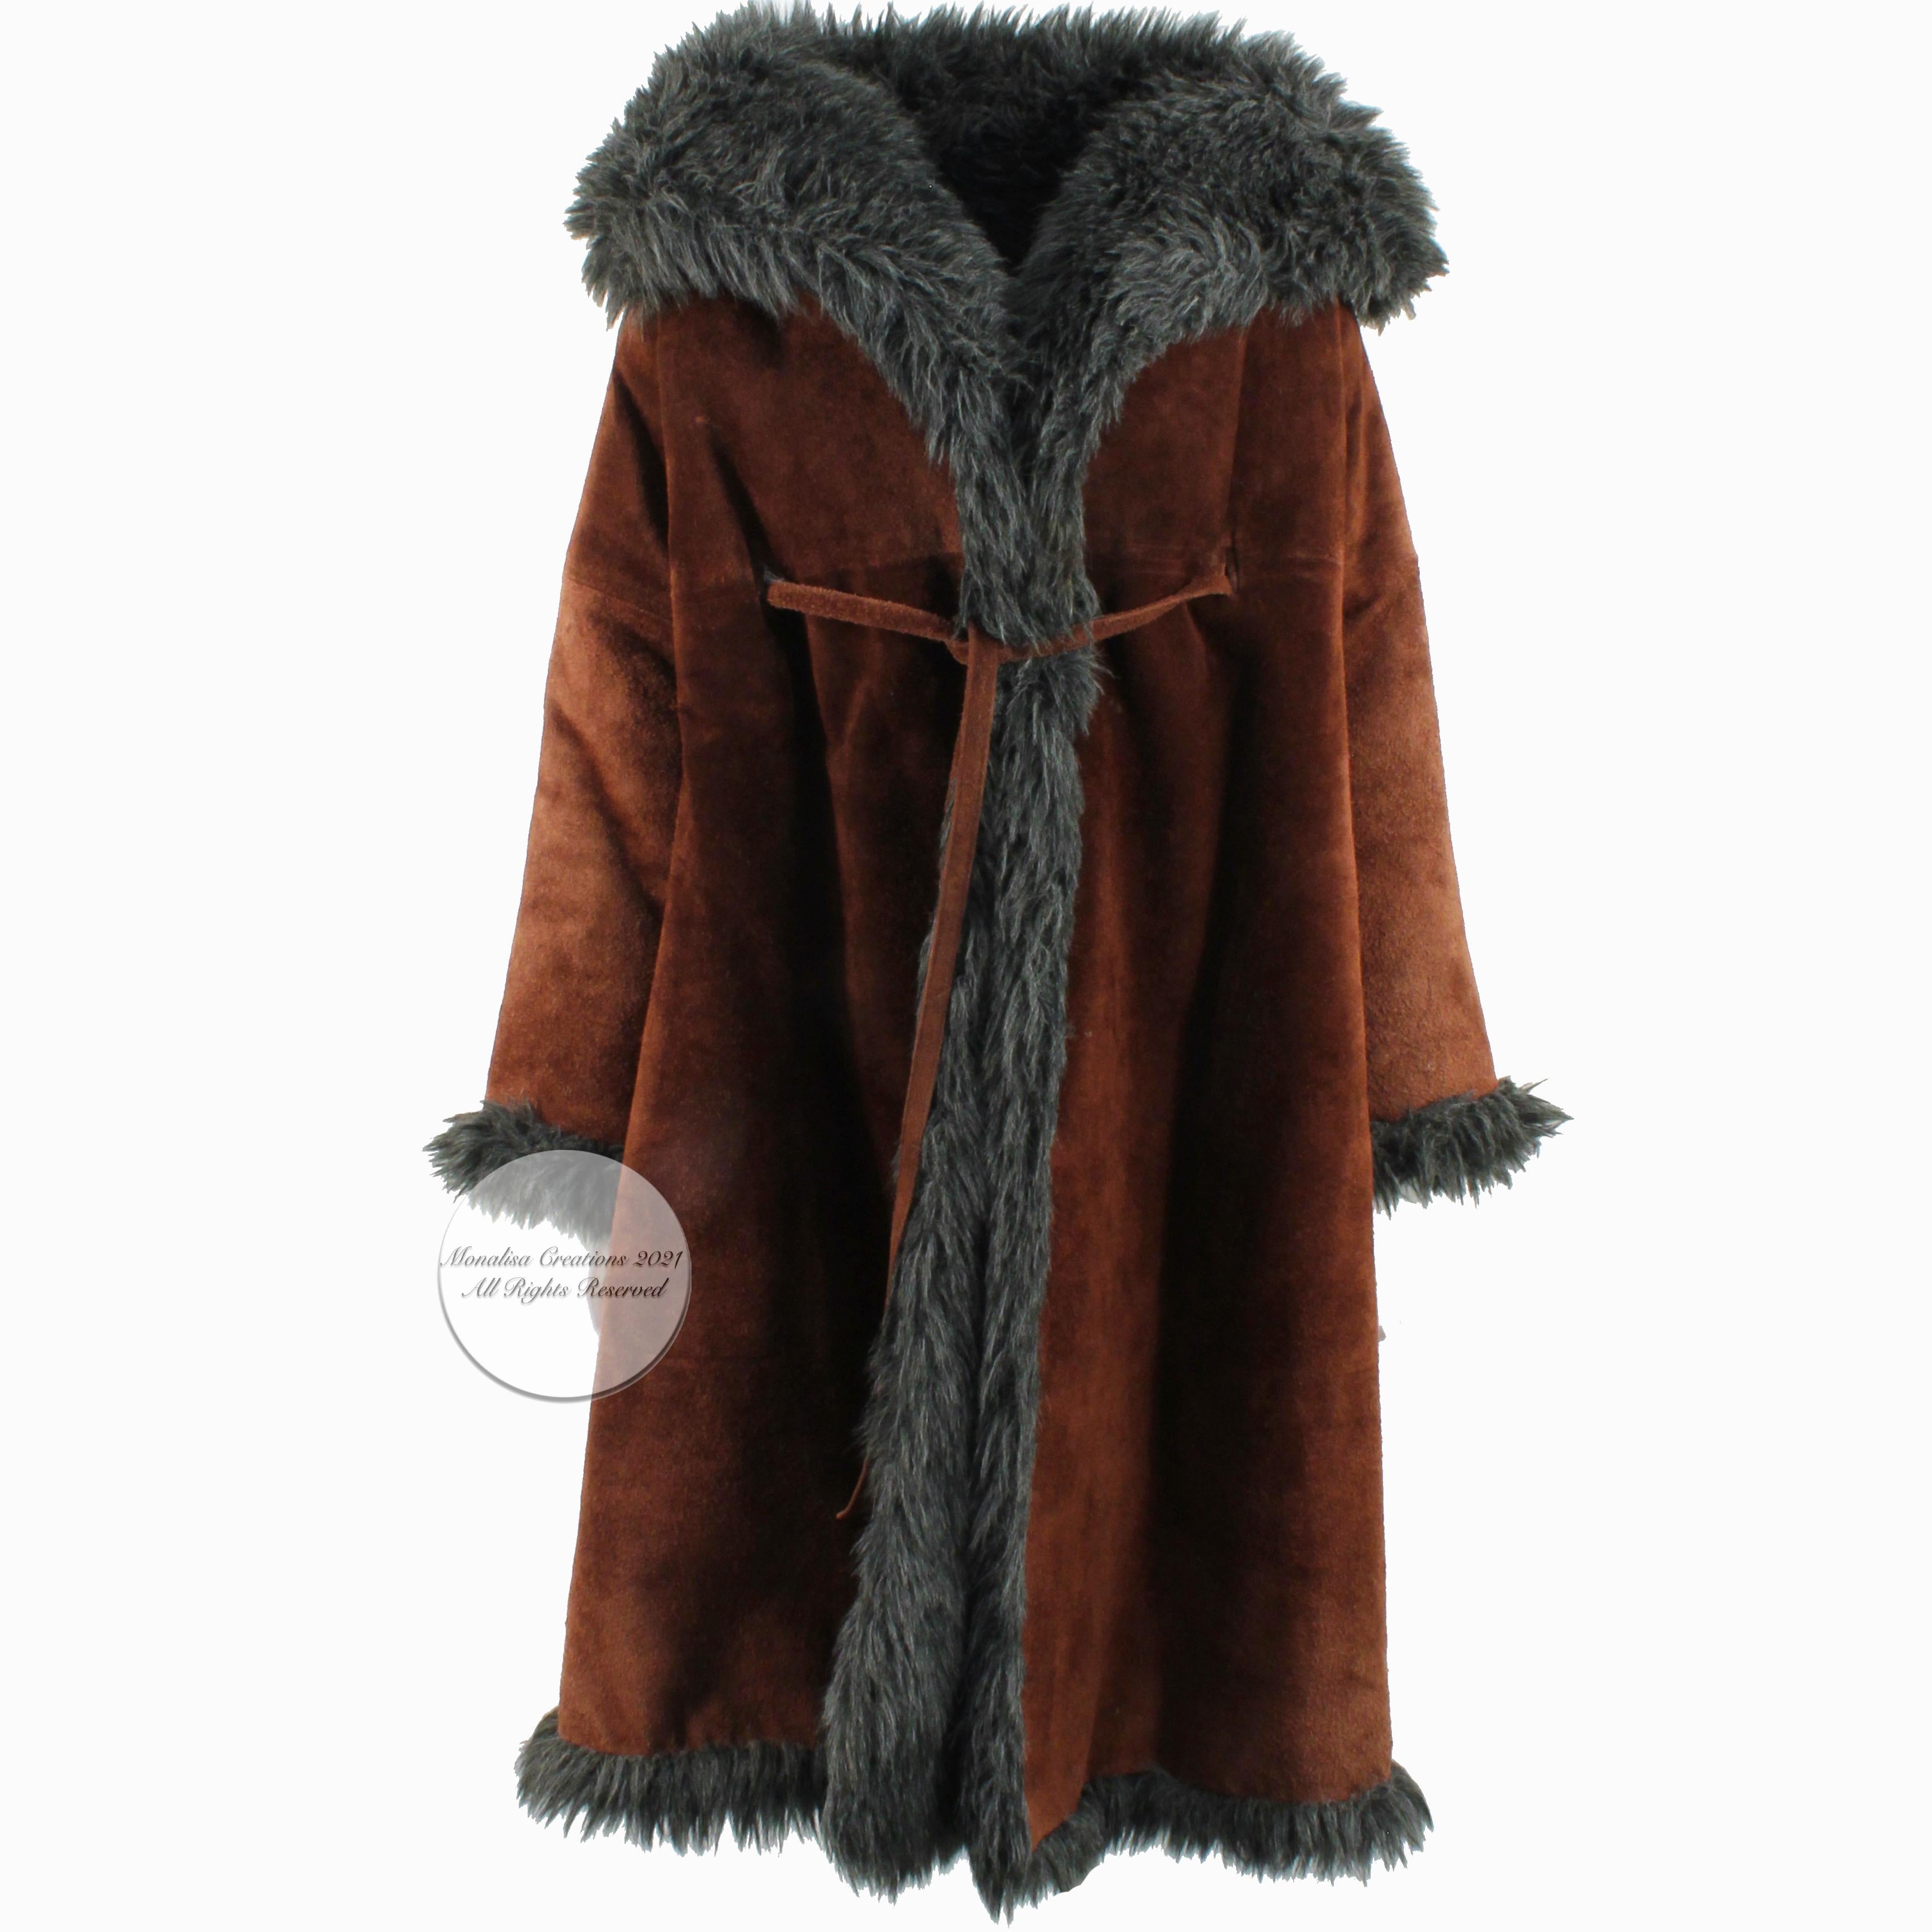 Fabuleux manteau Noh de Bonnie Cashin for Sills, probablement réalisé dans les années 60. Réalisé en daim marron acajou, il est doublé de fausse fourrure grise hirsute et se noue à l'aide d'un nœud de cravate en daim. Des poches en demi-lune sur